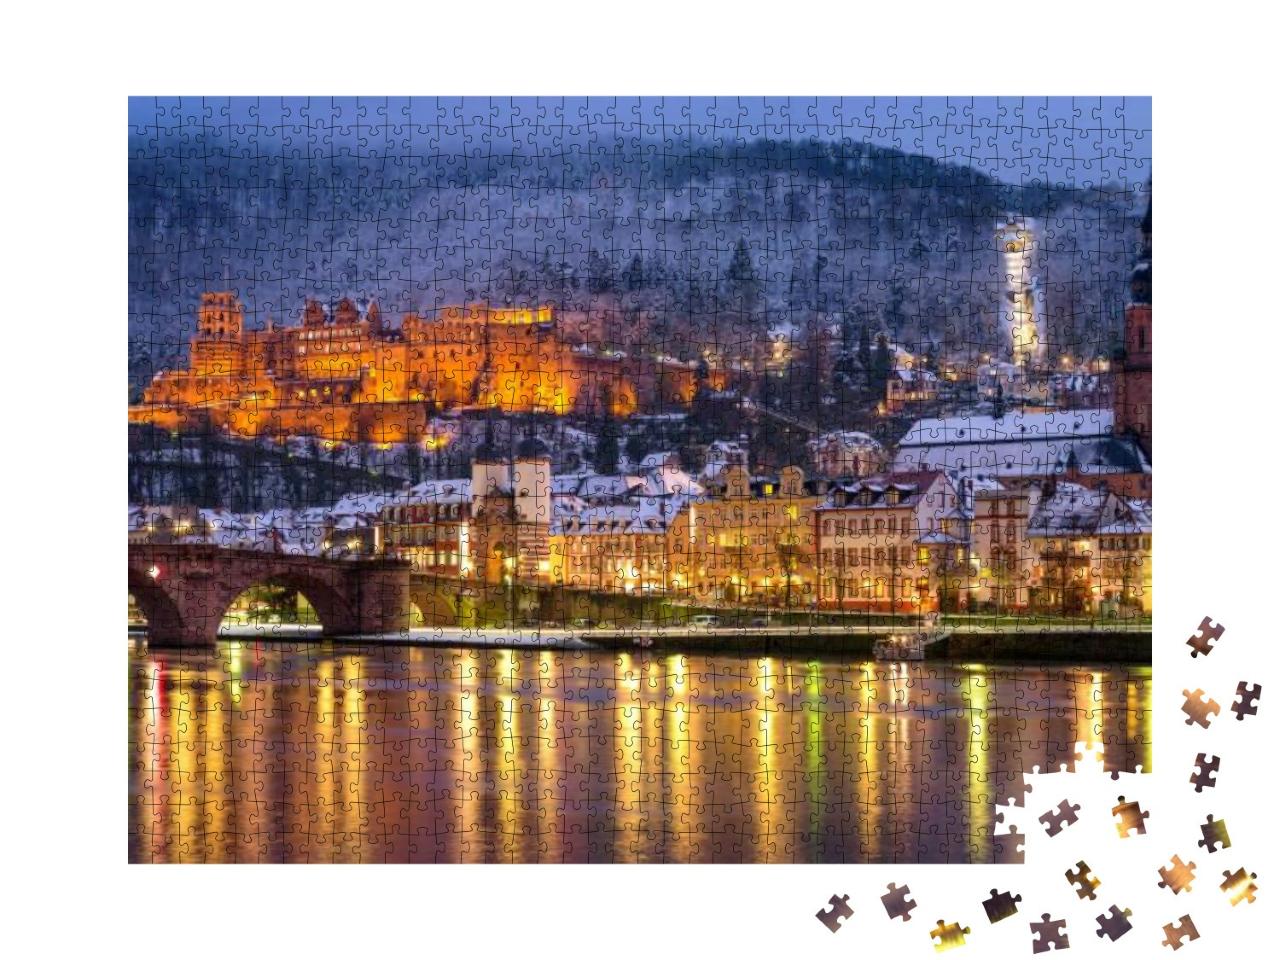 Puzzle 1000 Teile „Winterliche Altstadt von Heidelberg, Deutschland“